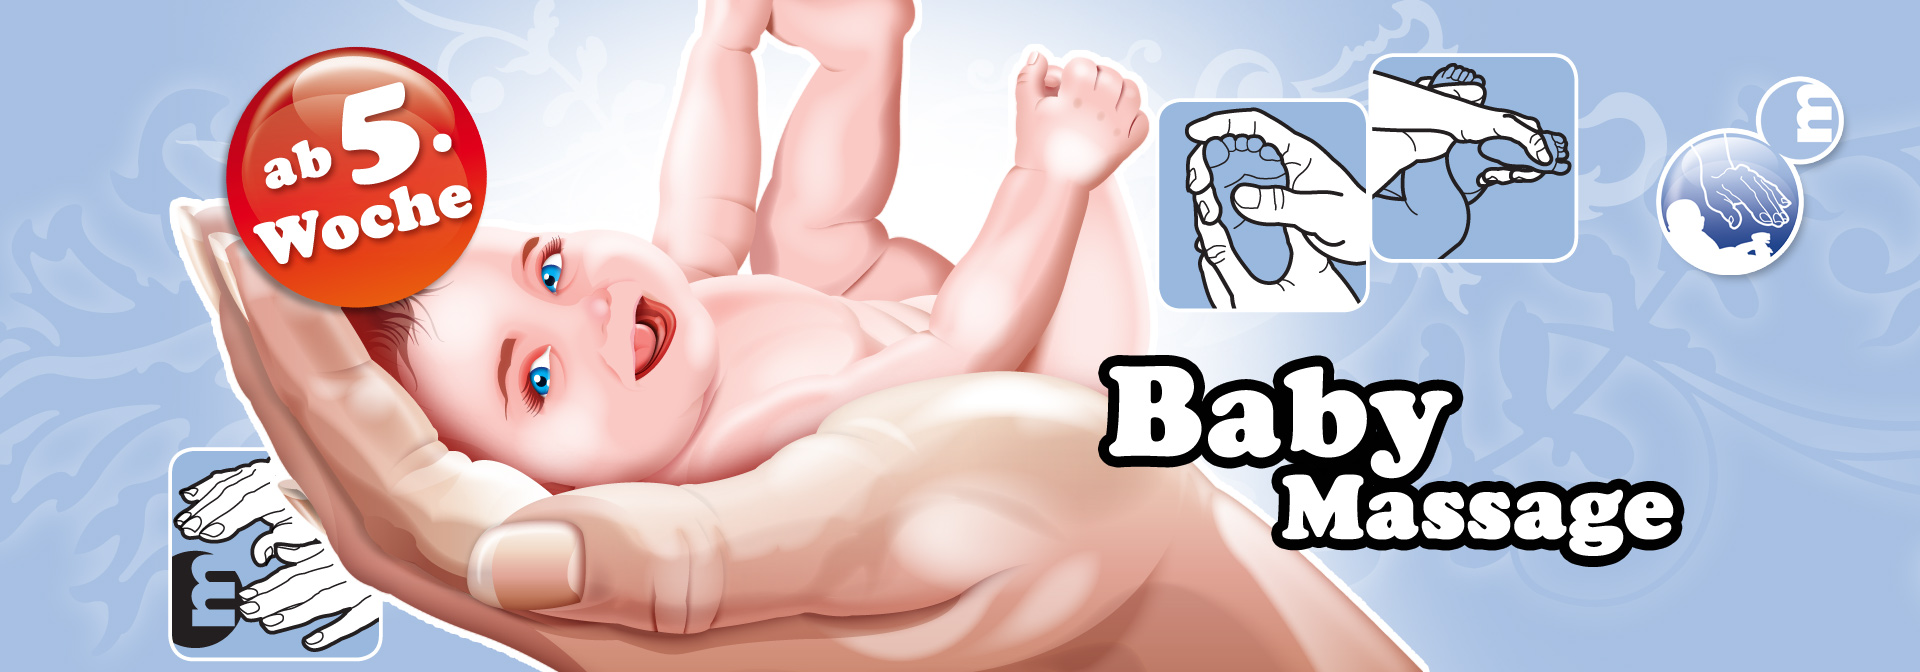 Einstiegsgrafik Baby-Massage